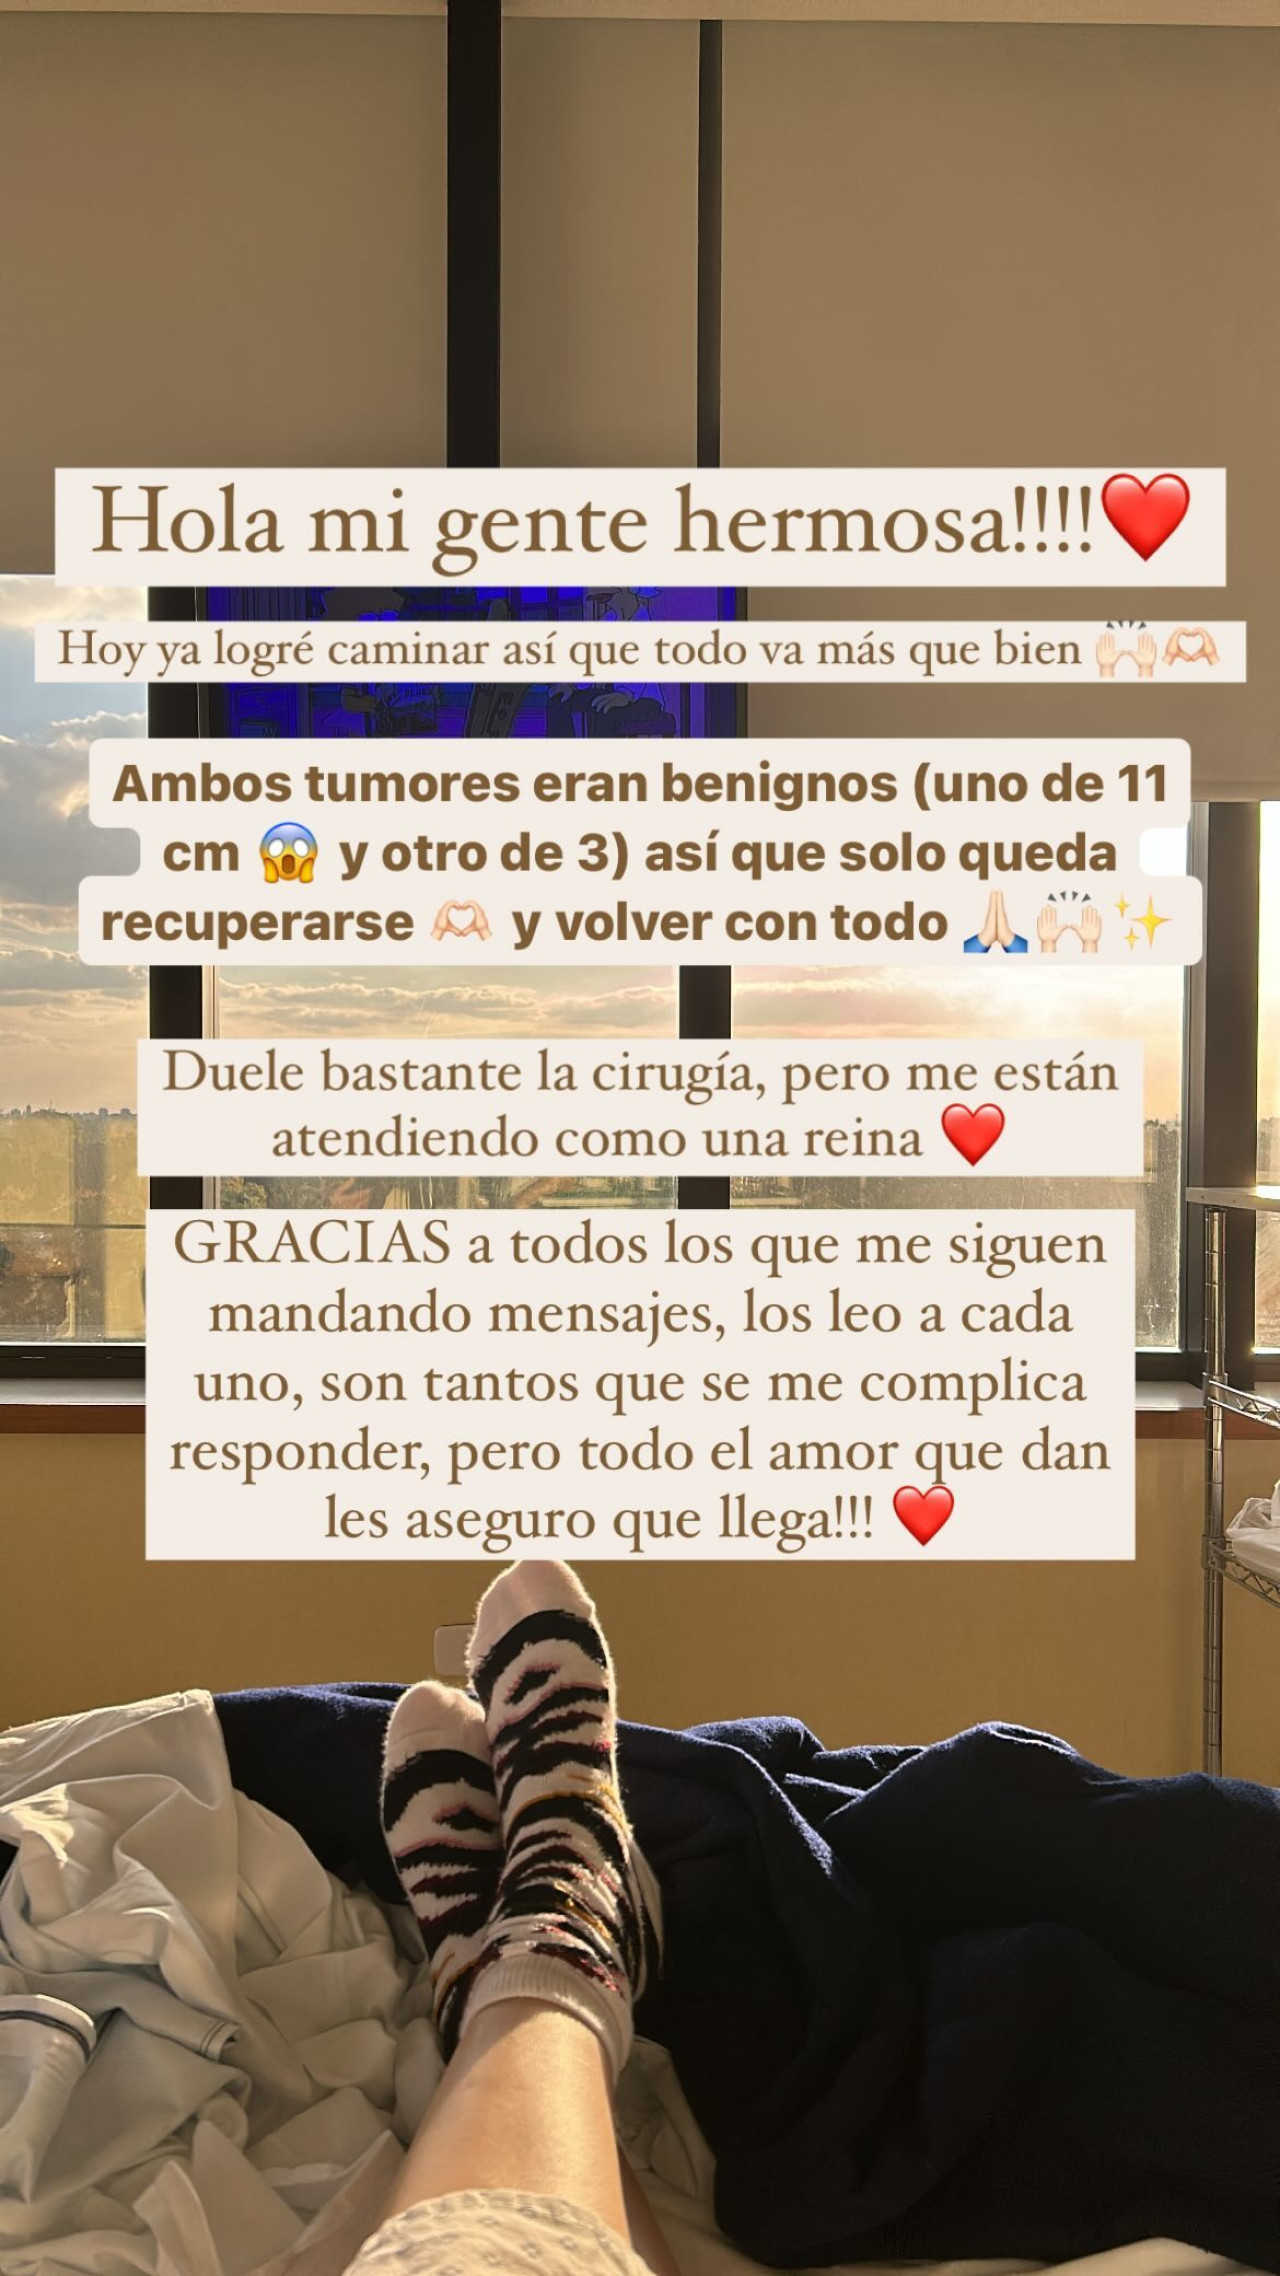 El mensaje de María Sol Ferrero. Foto: Instagram @solferrero_